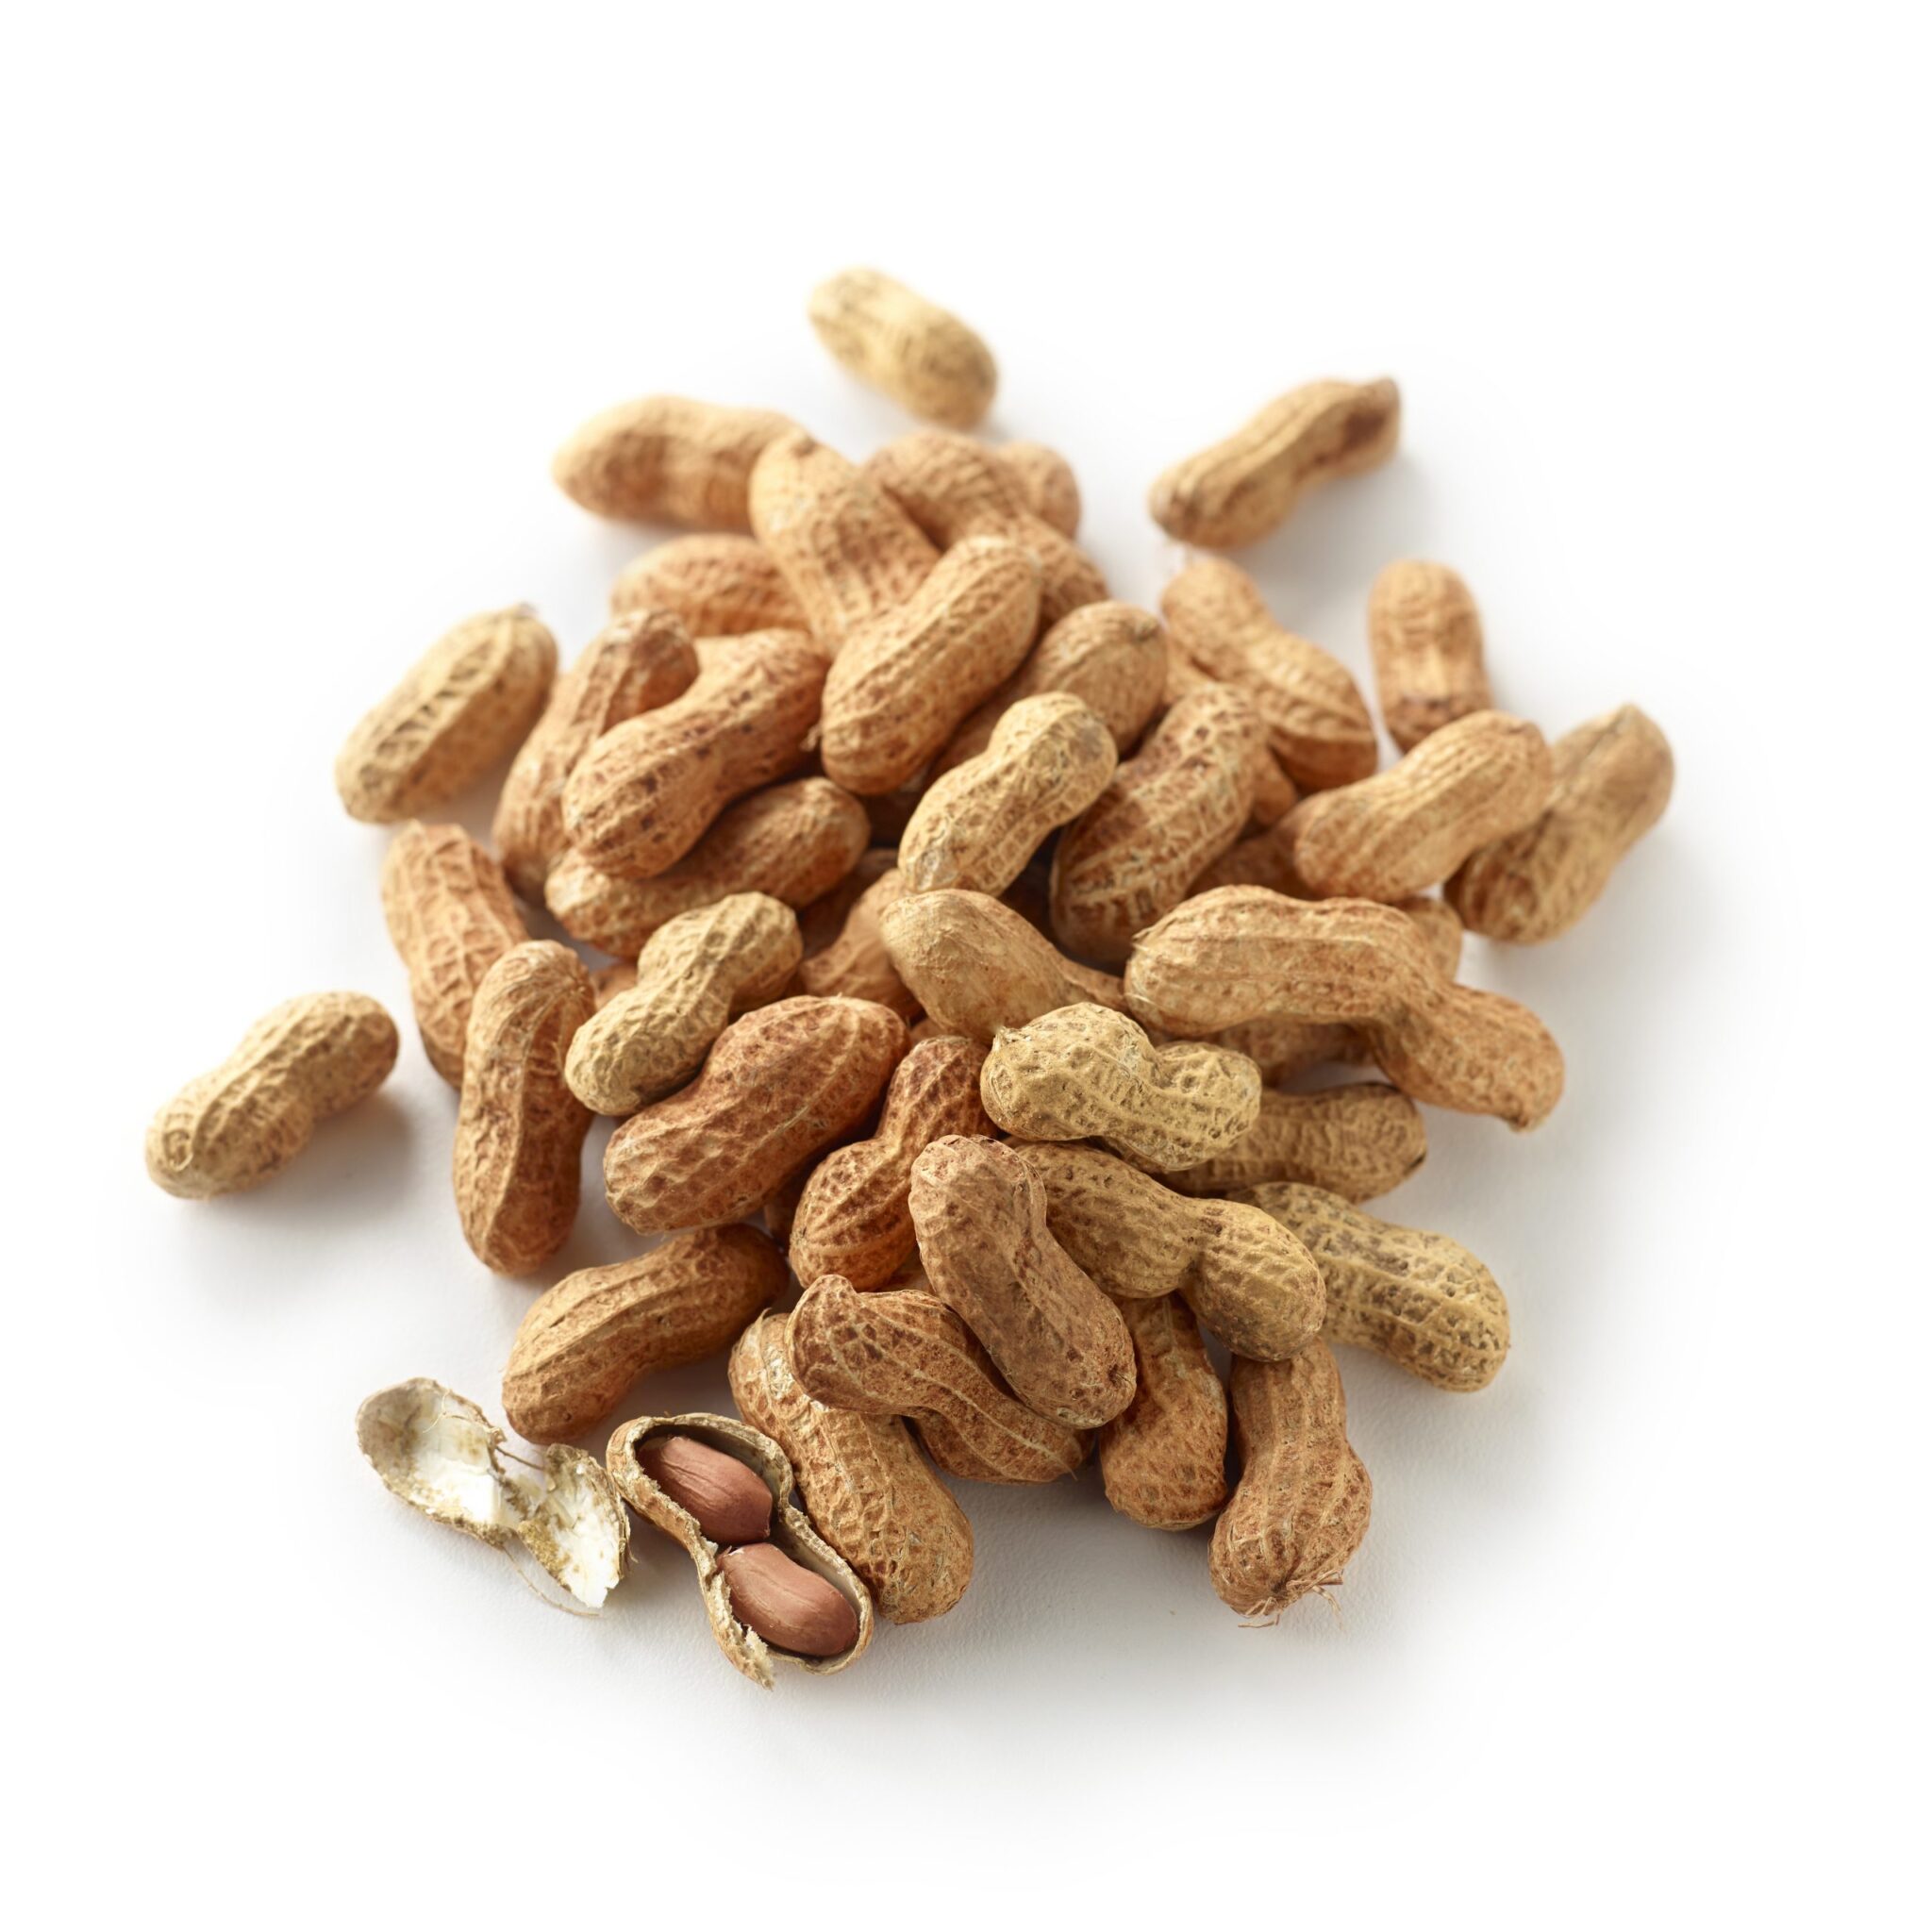 Australian Roasted Peanut in Shell